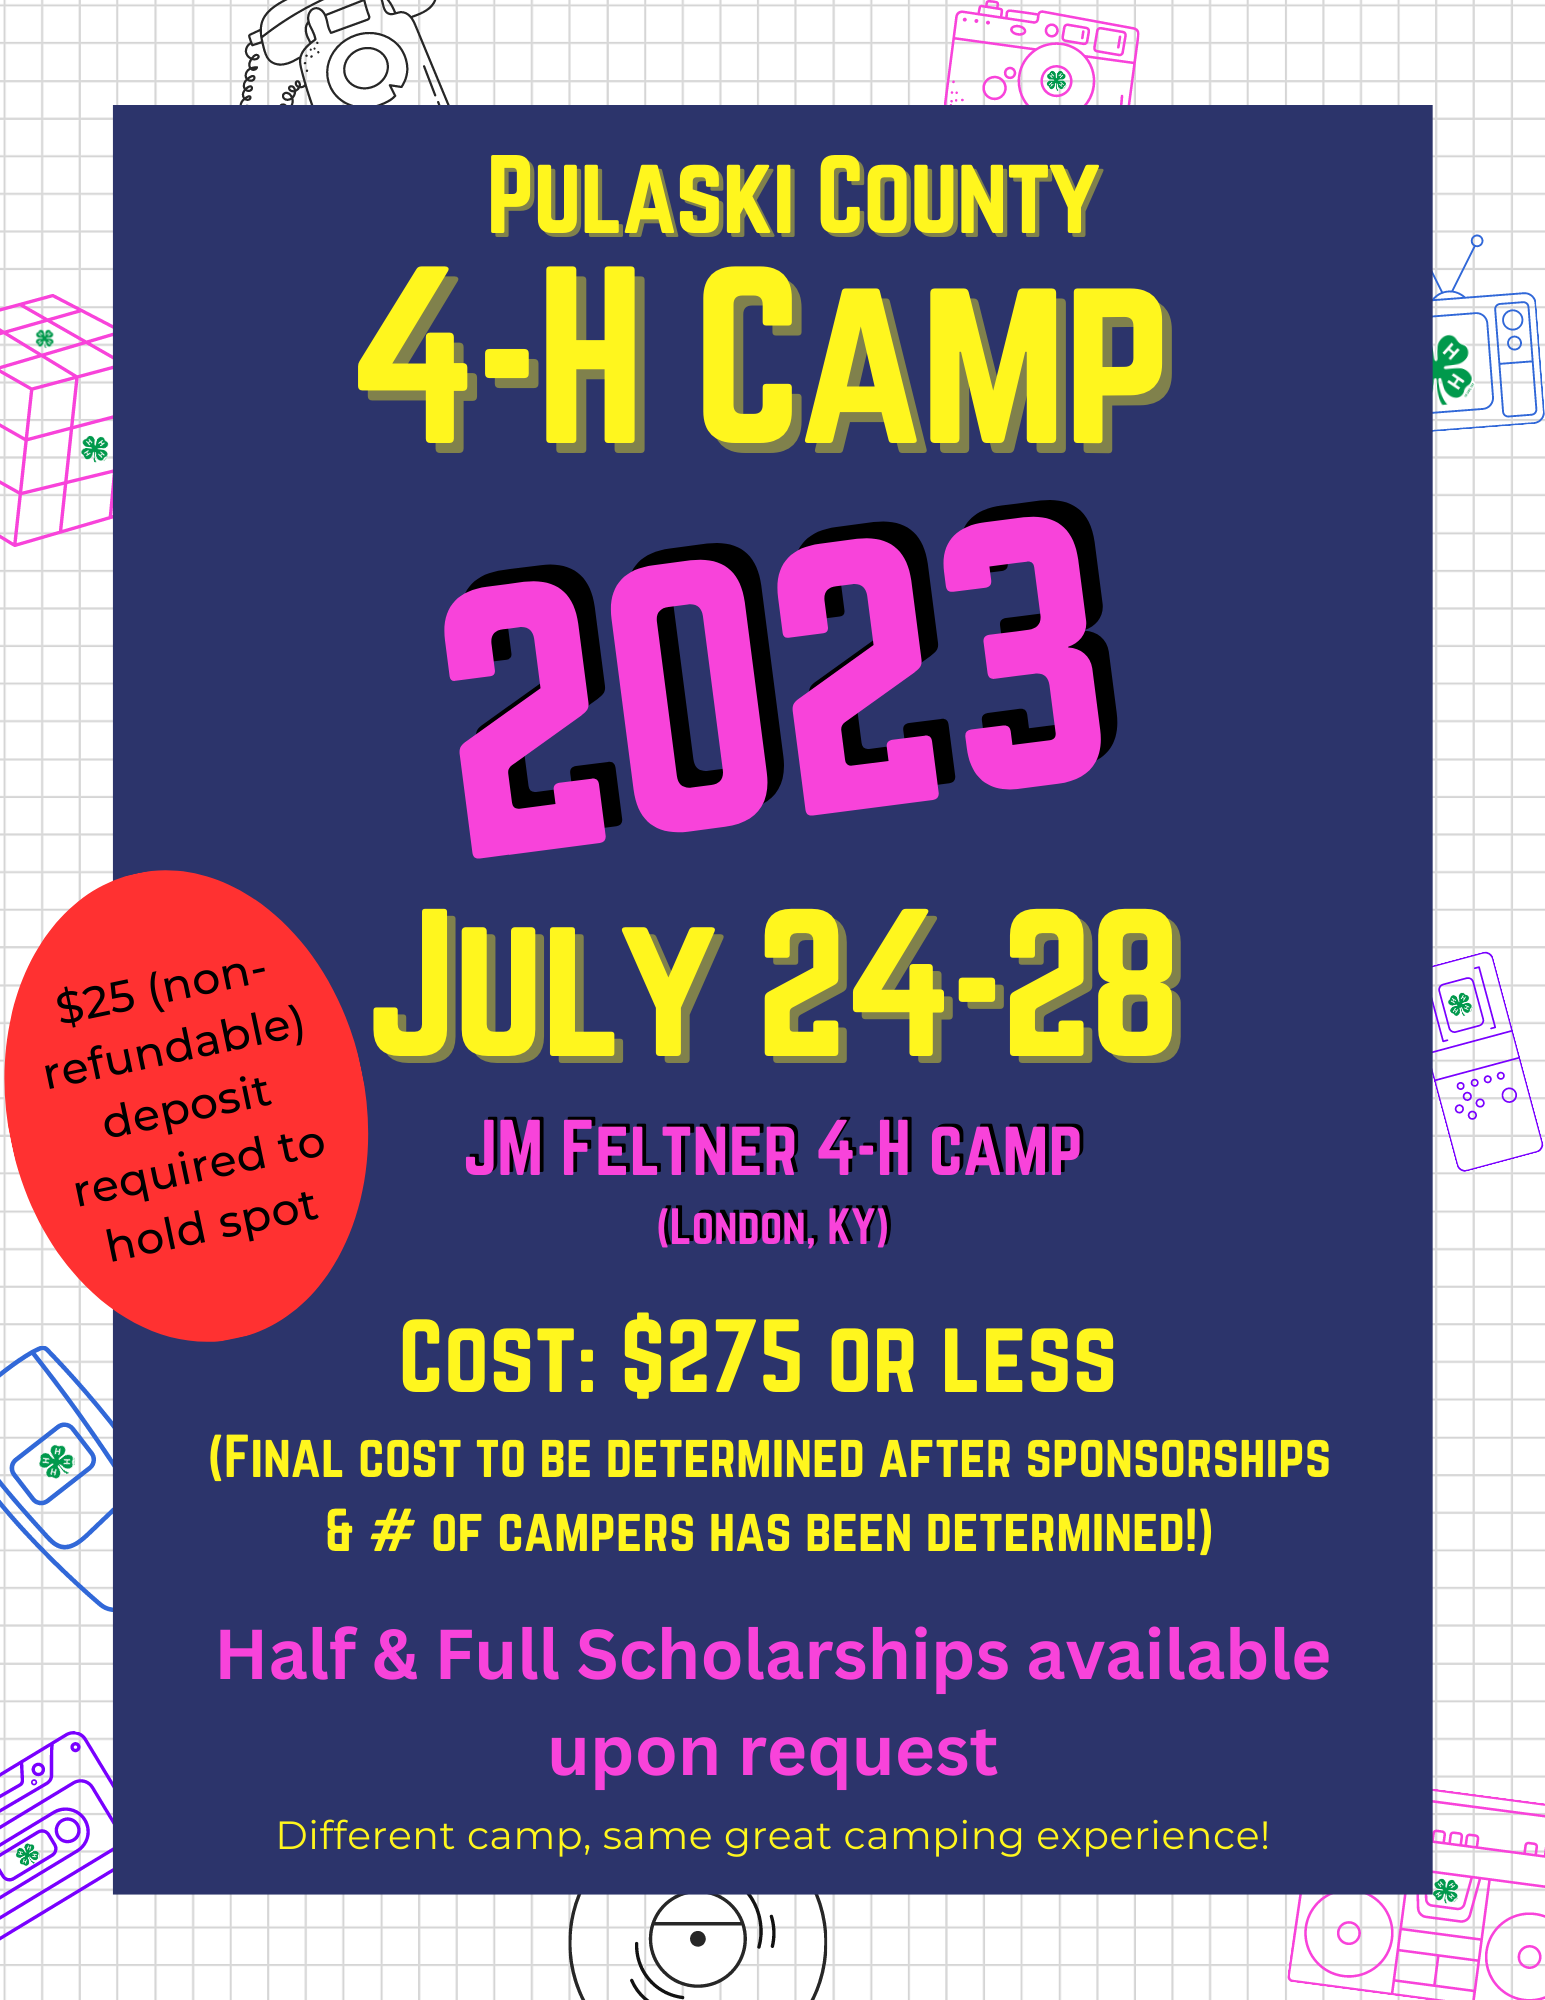 Theme: time warp, Pulaski County 4-H camp 2023: July 24-28 at JM Feltner 4-H